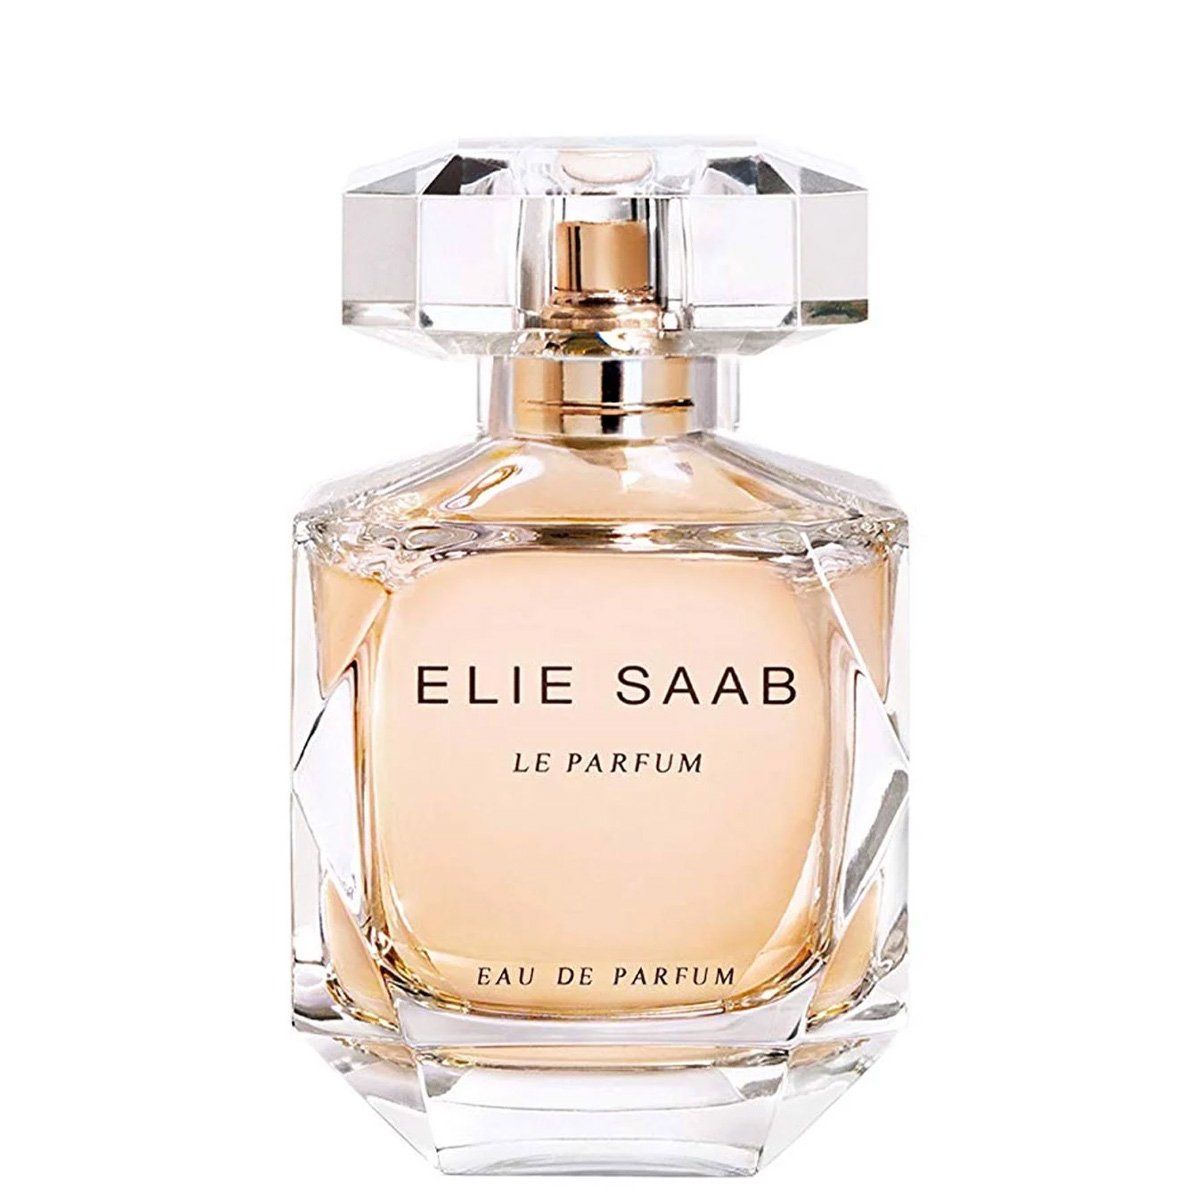  Elie Saab Le Parfum Eau de Parfum 